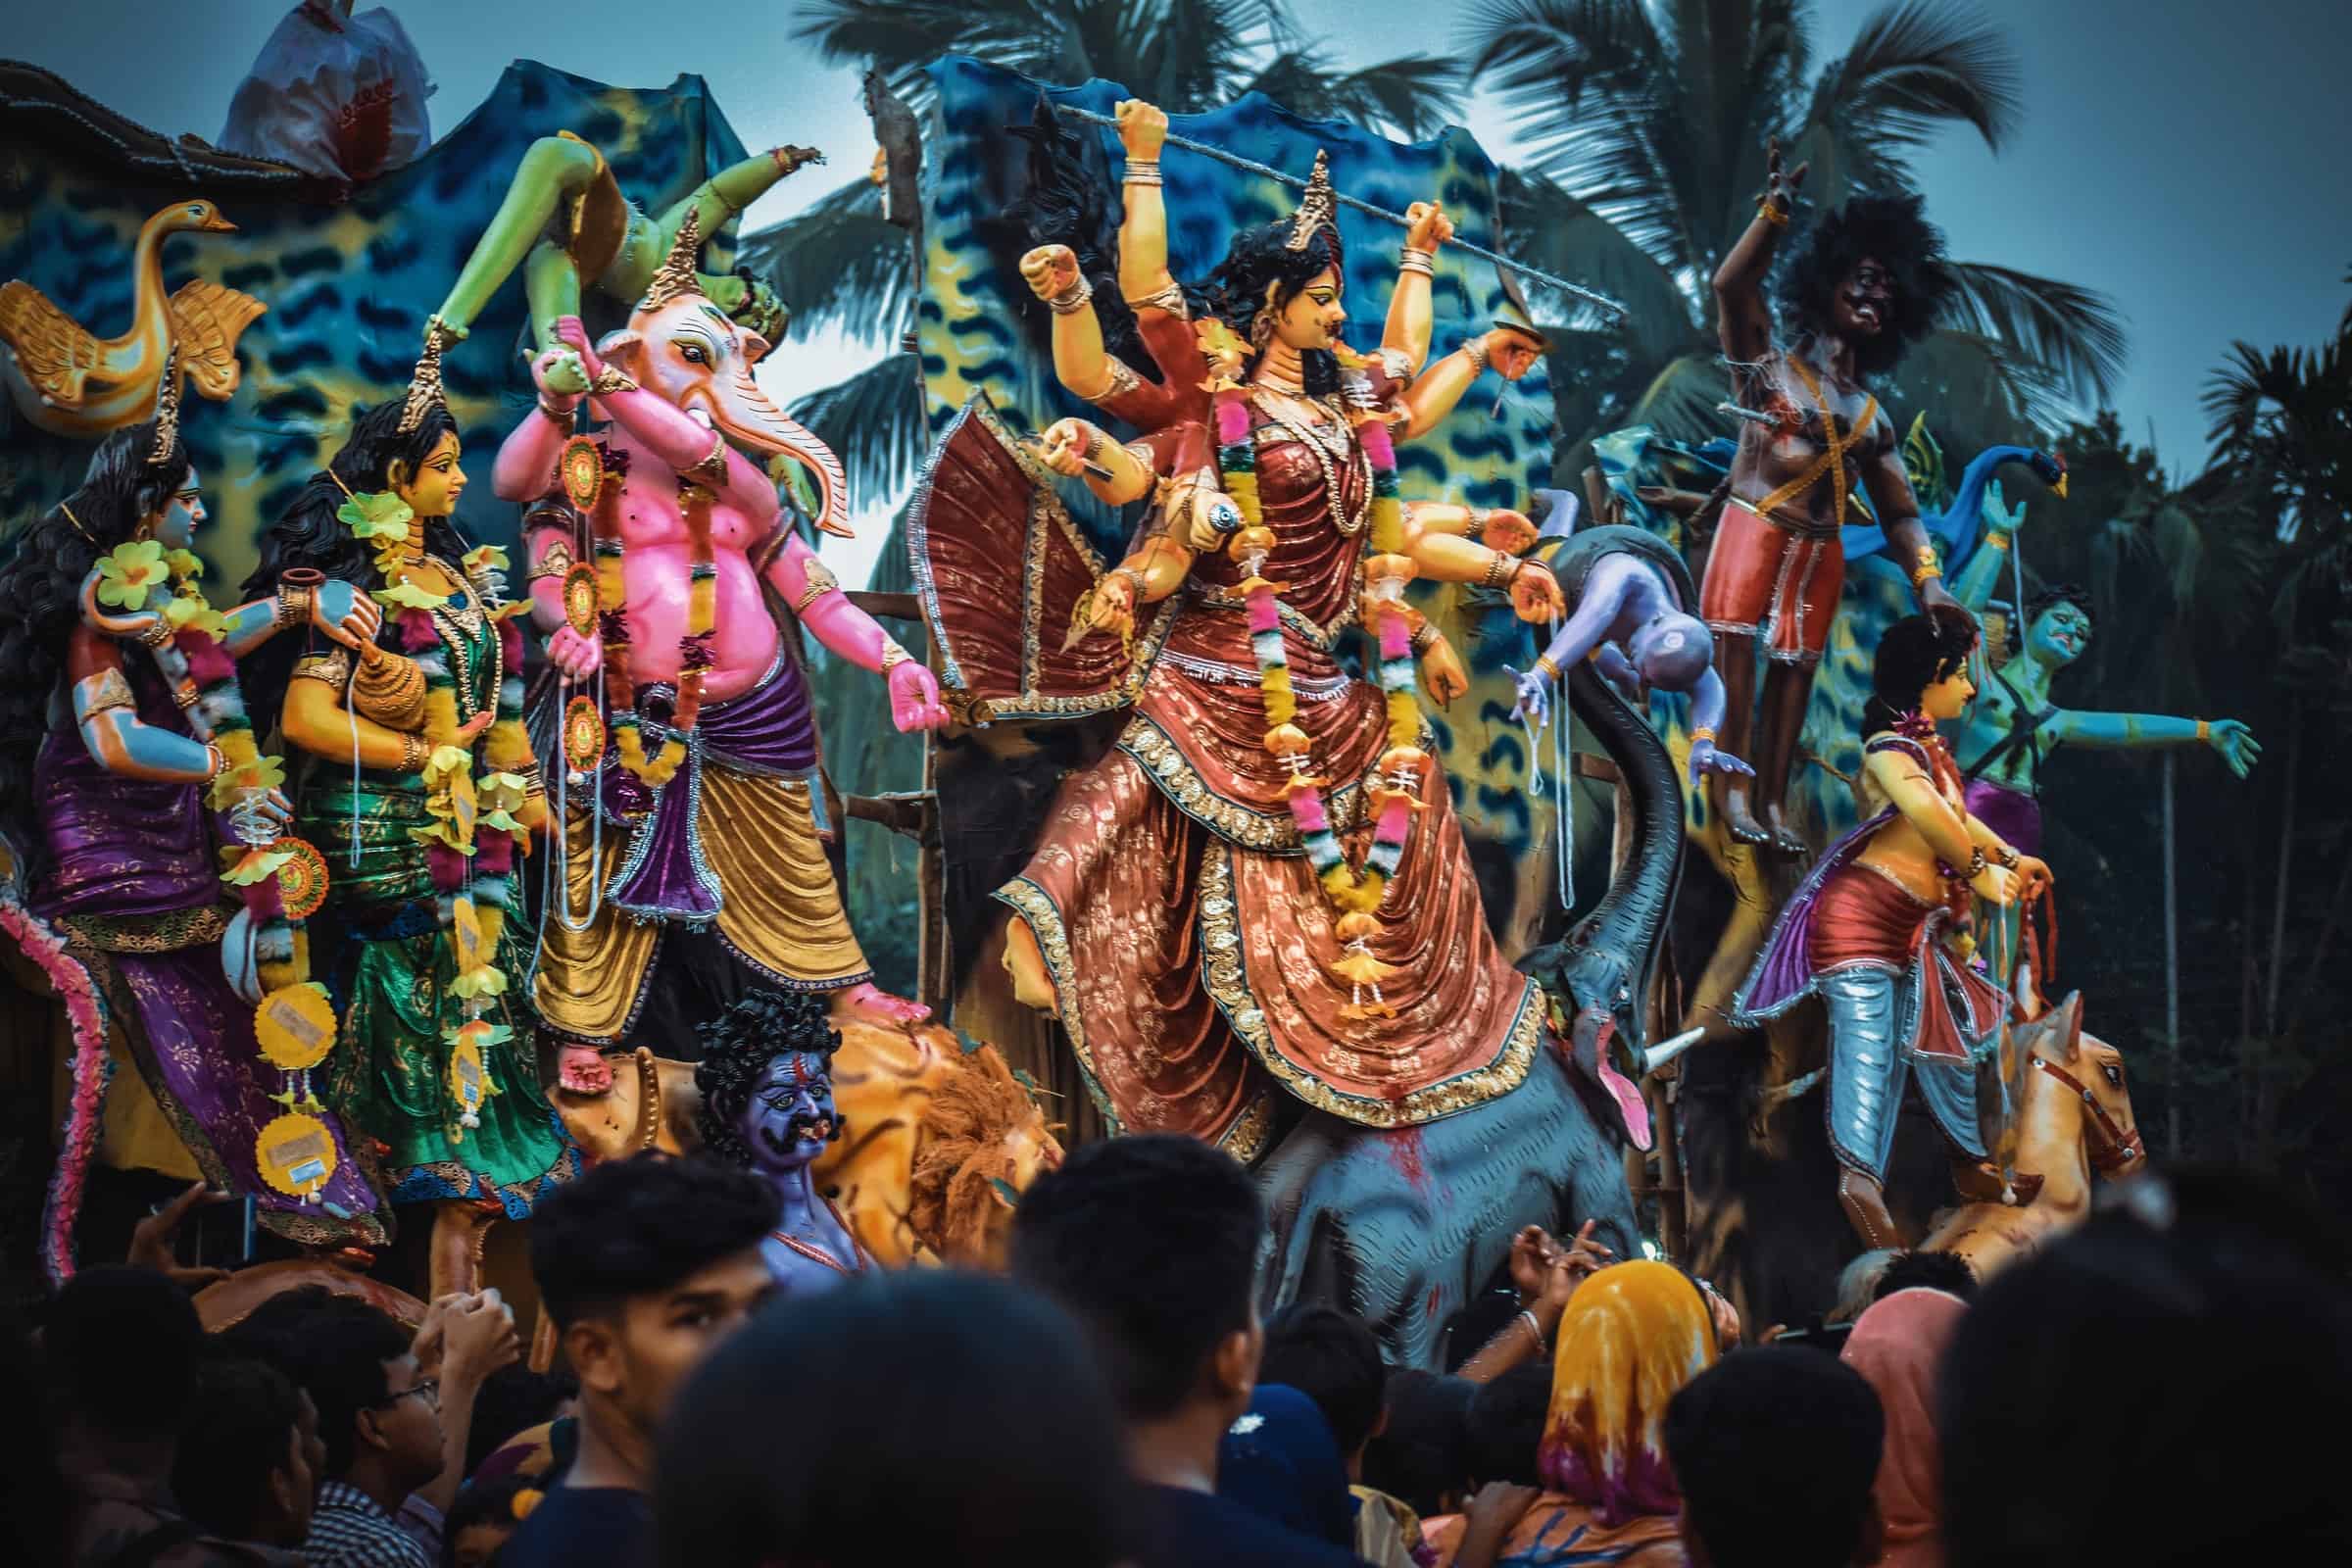 Celebrating Durga Puja in Kolkatta in Hinduism